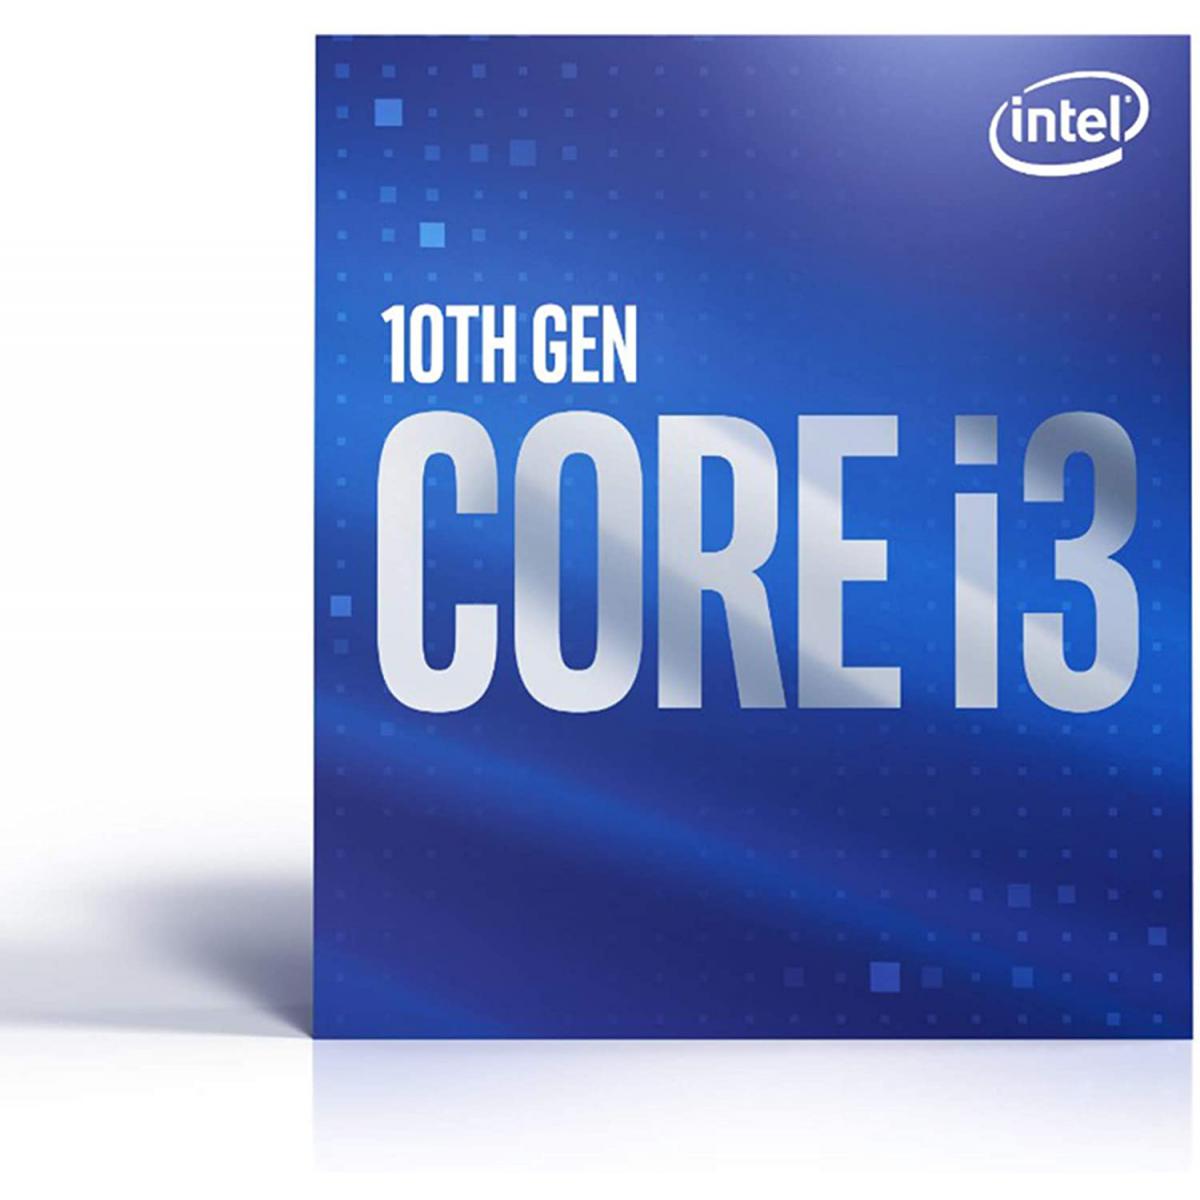 Intel INTEL Core i3-10100F 3.6GHz LGA1200 Box Core i3-10100F 3.6GHz LGA1200 6M Cache No Graphics Boxed CPU